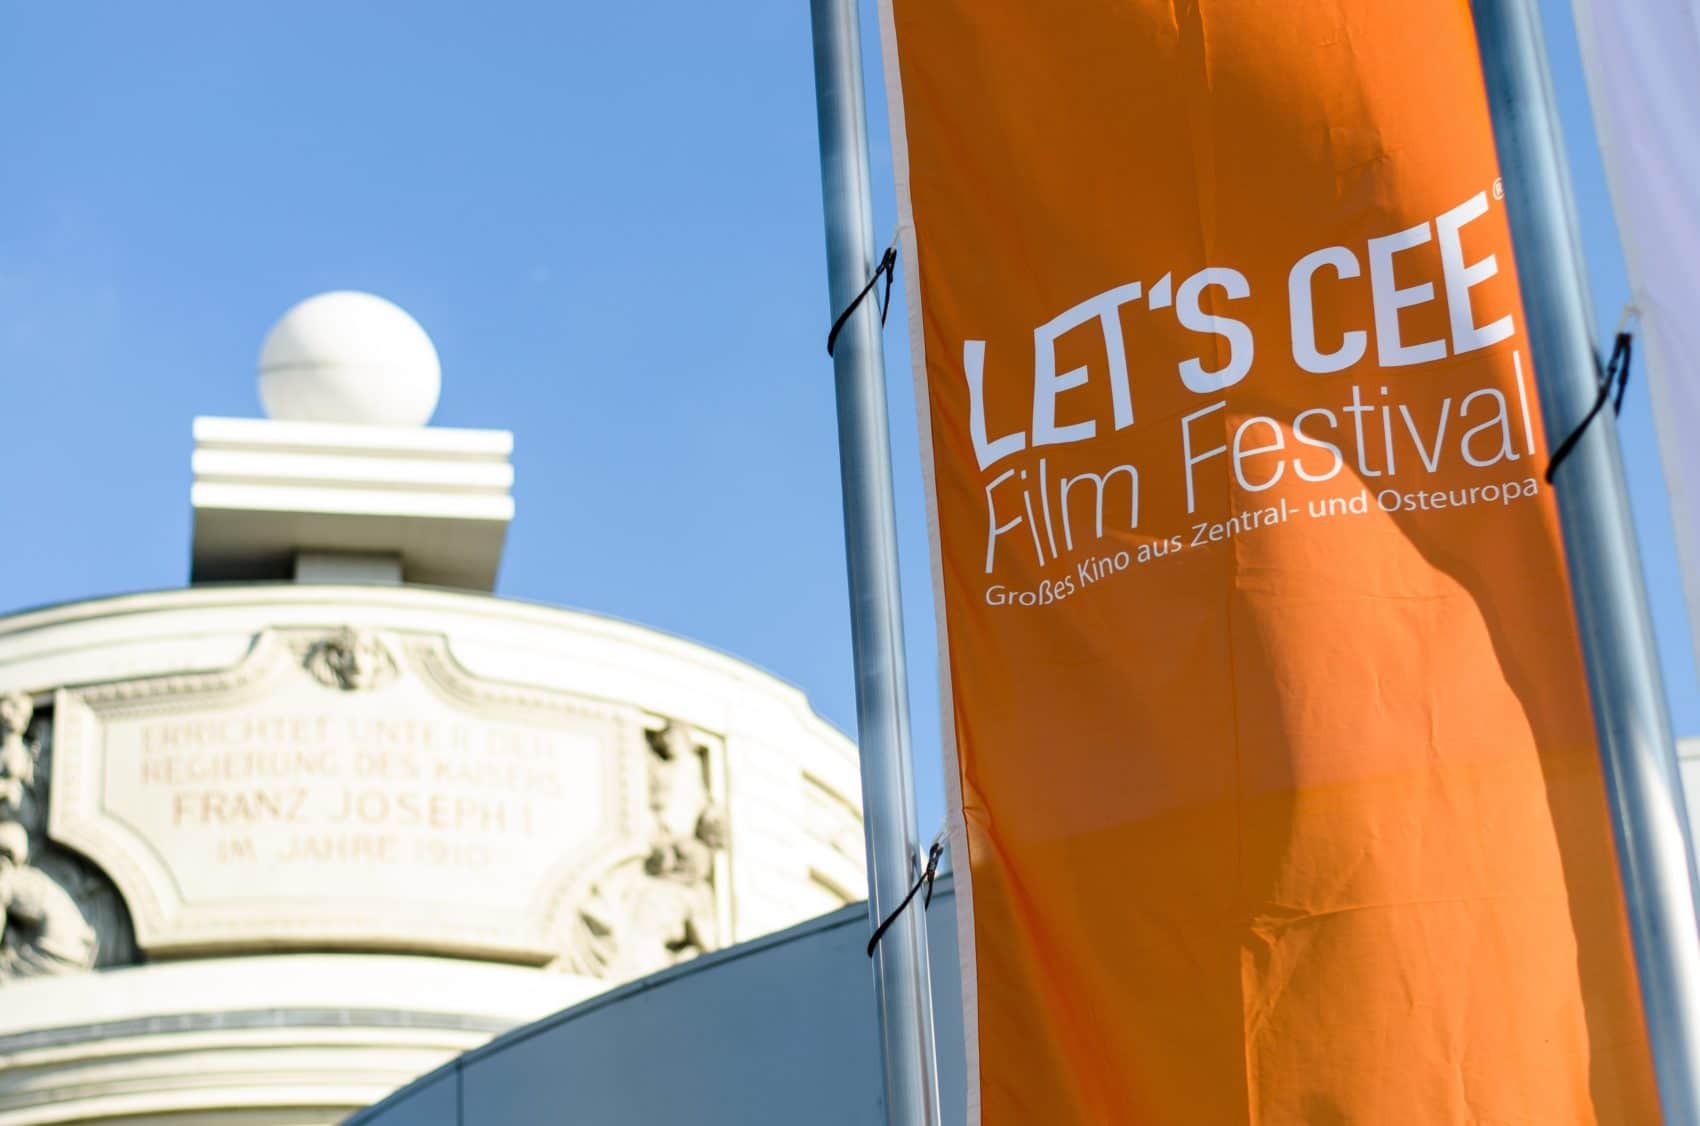 Das LET'S CEE Film Festival 2019 musste leider abgesagt werden. 